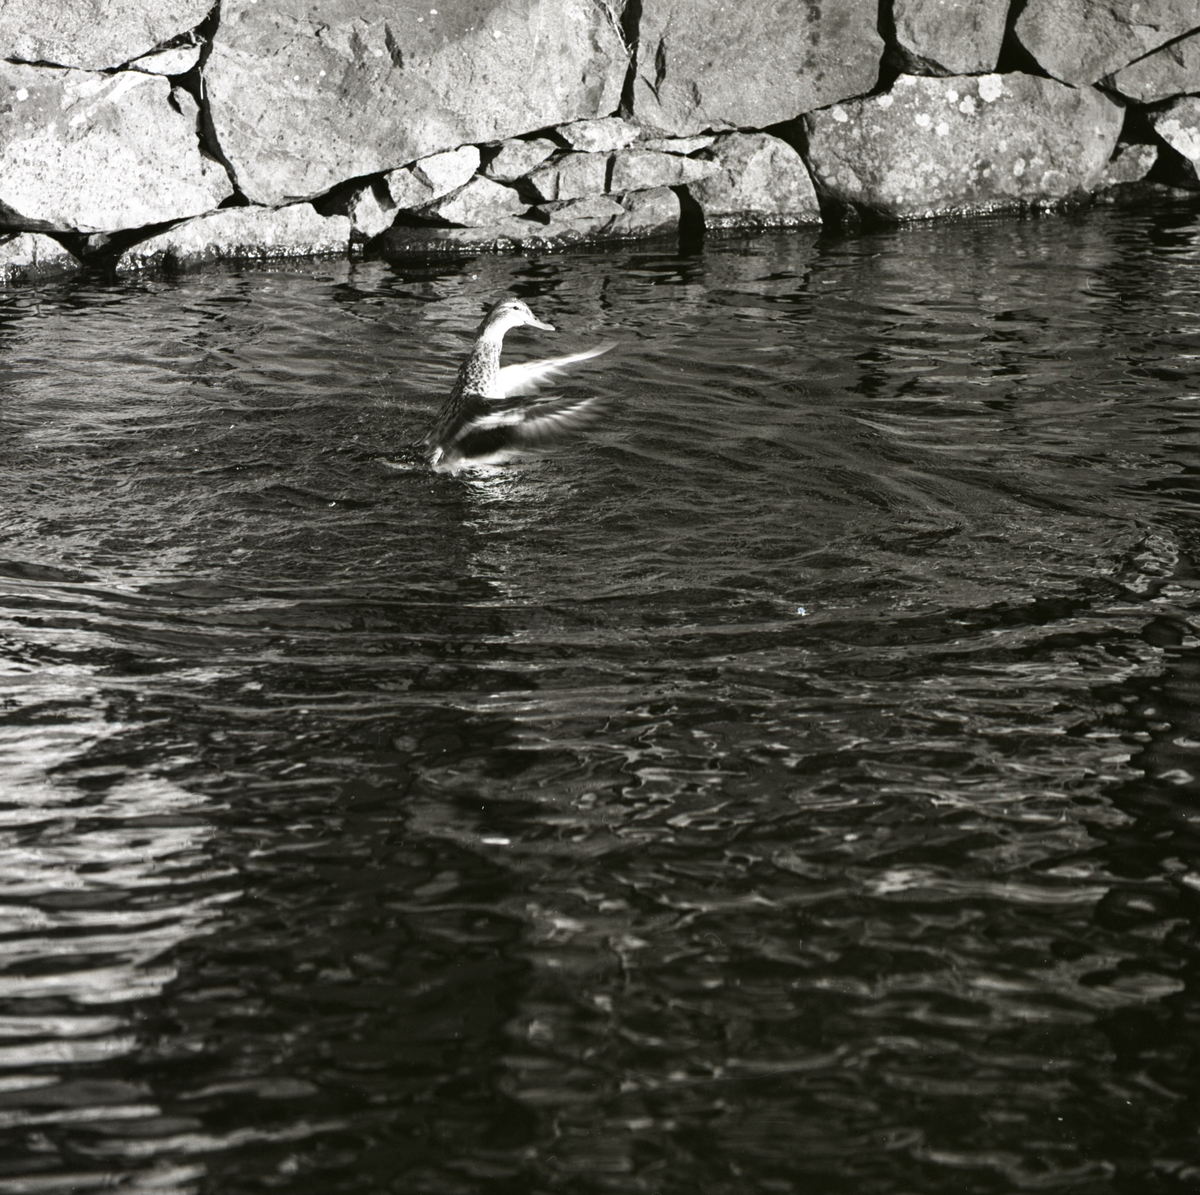 En and har rest sig och flaxar med vingarna i ett vattendrag vid Hultsfred, mars 1961